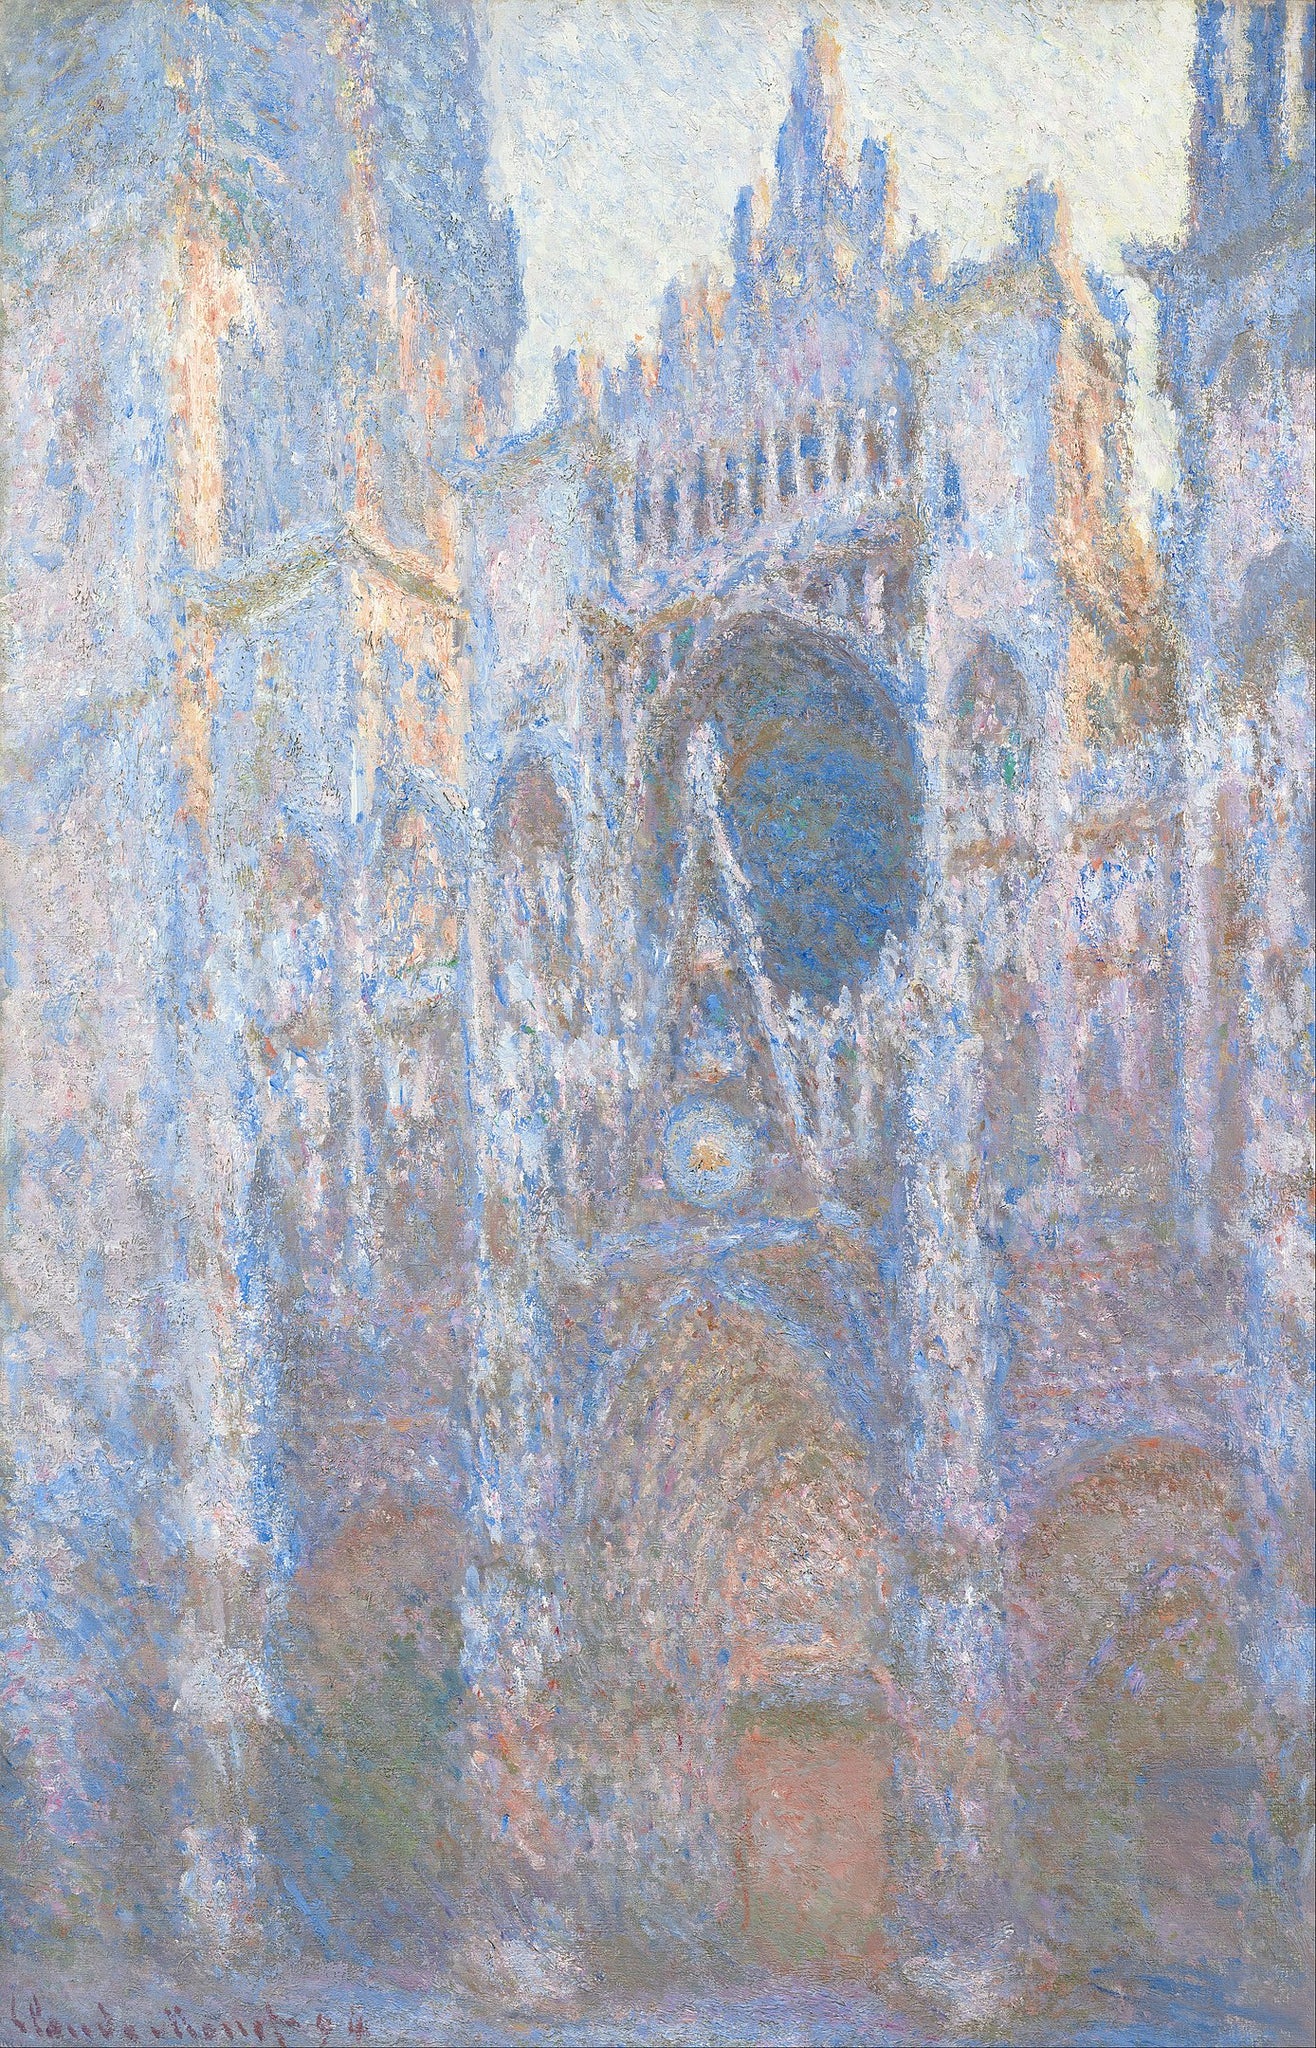 Cathédrale de Rouen, façade ouest (W1351)	- Claude Monet